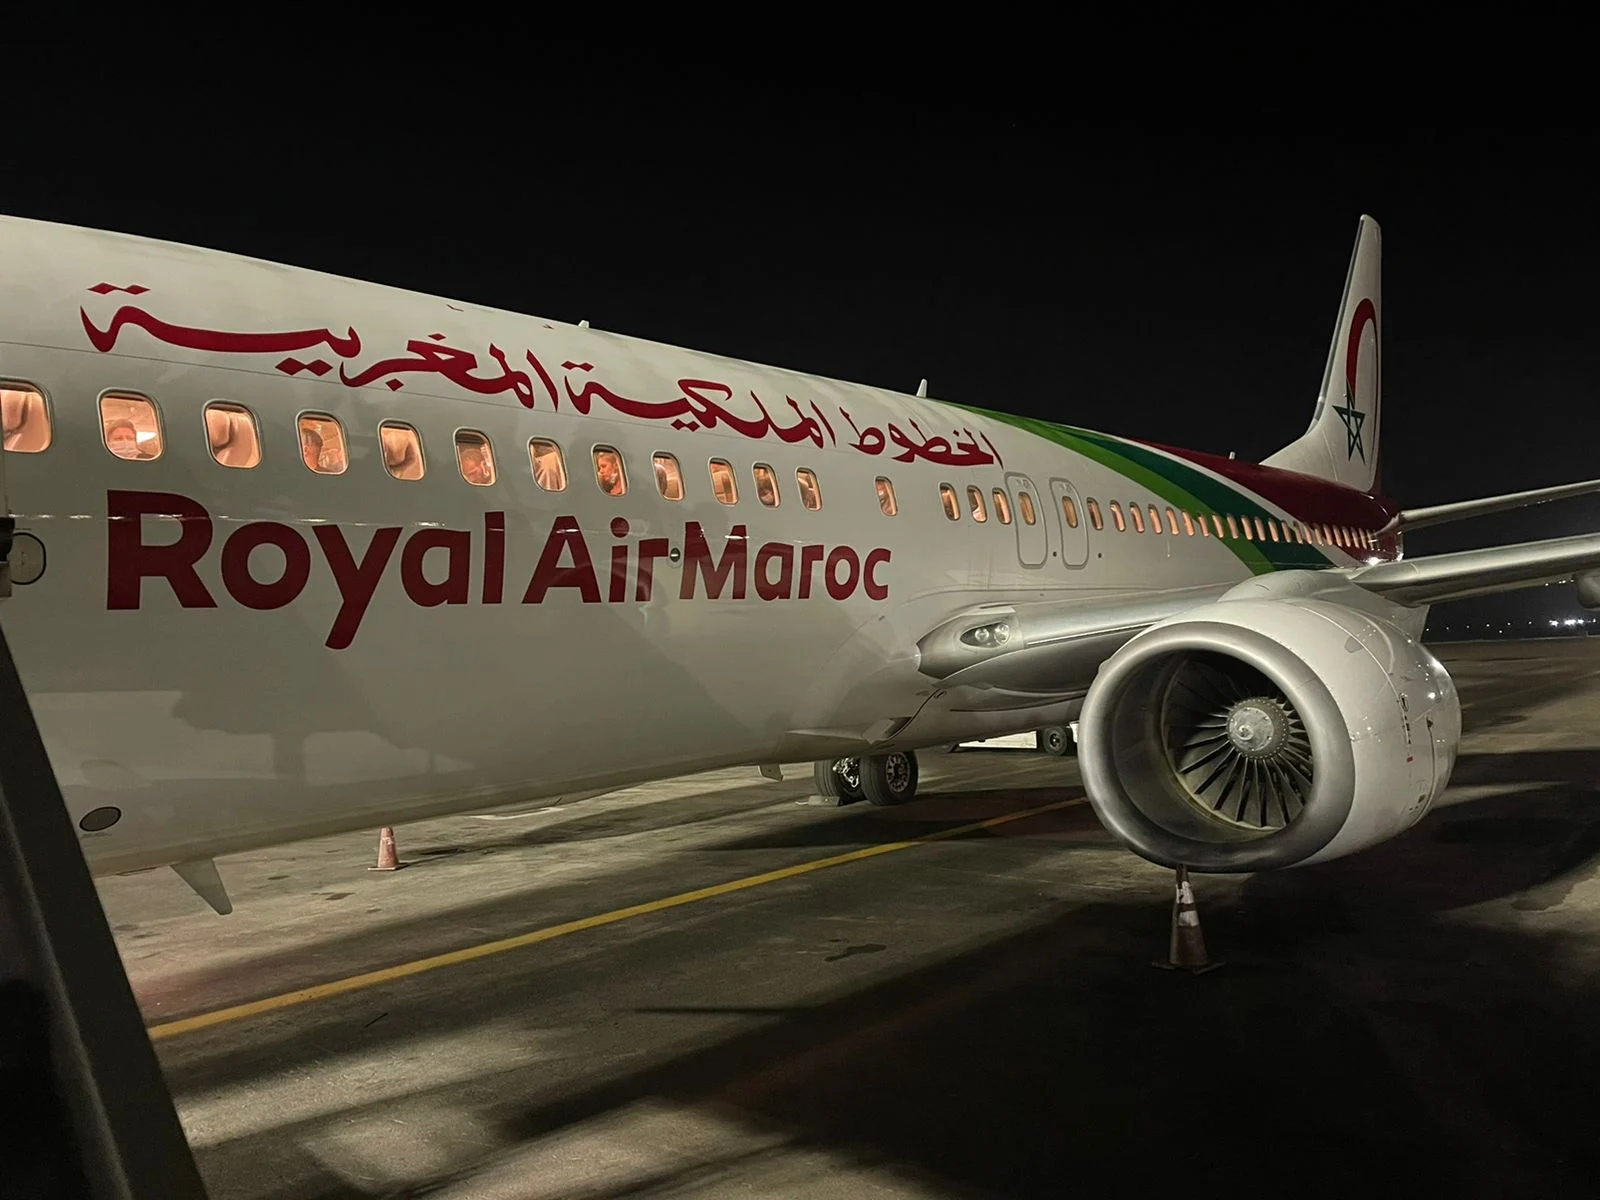 Opportunité de carrière chez Royal Air Maroc : Recrutement de représentants commerciaux à Casablanca